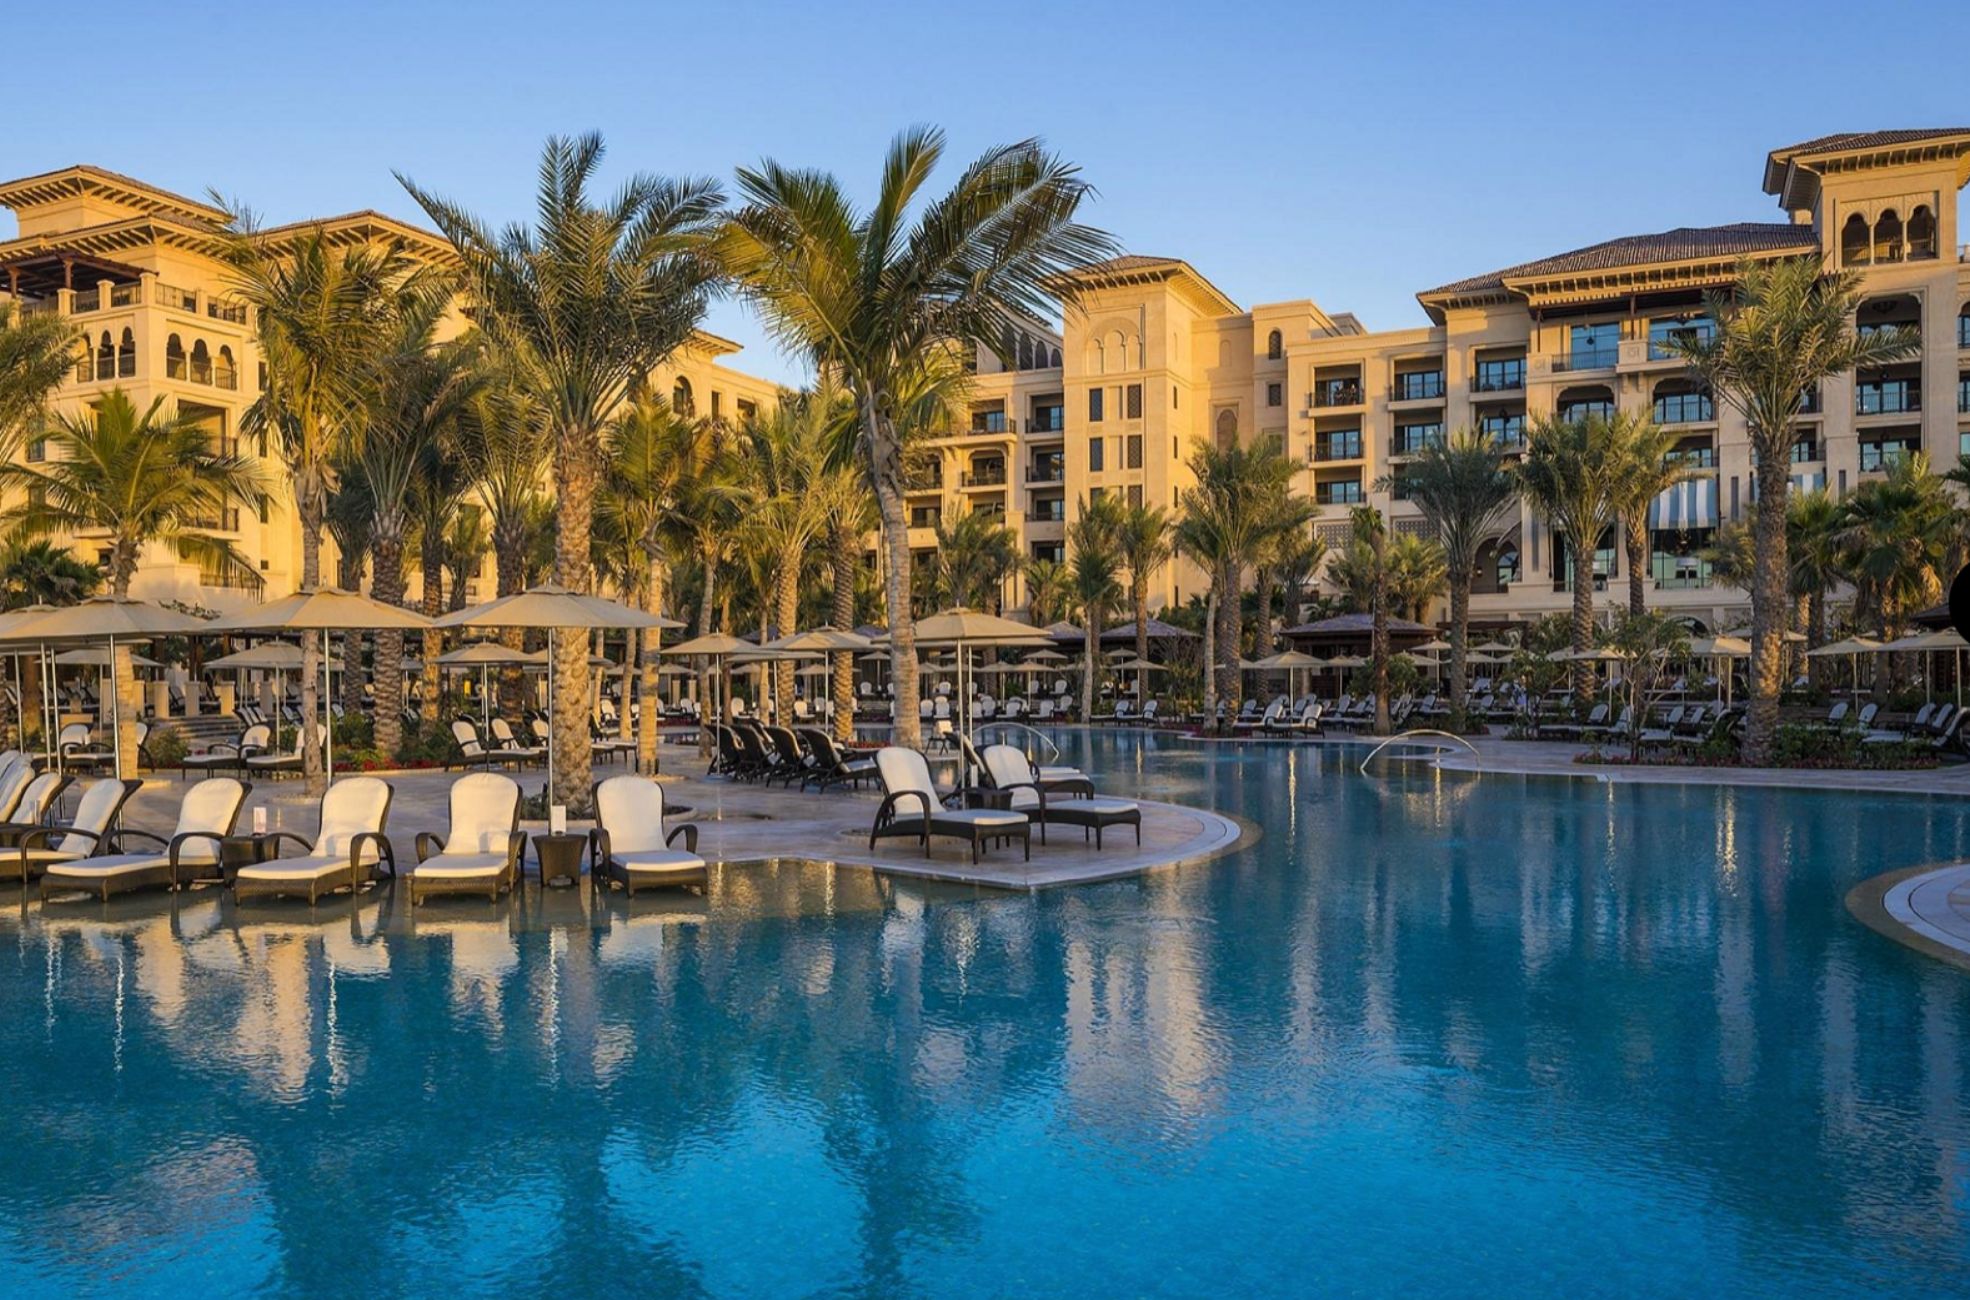 The Four Seasons Hotel In Dubai Pool Area